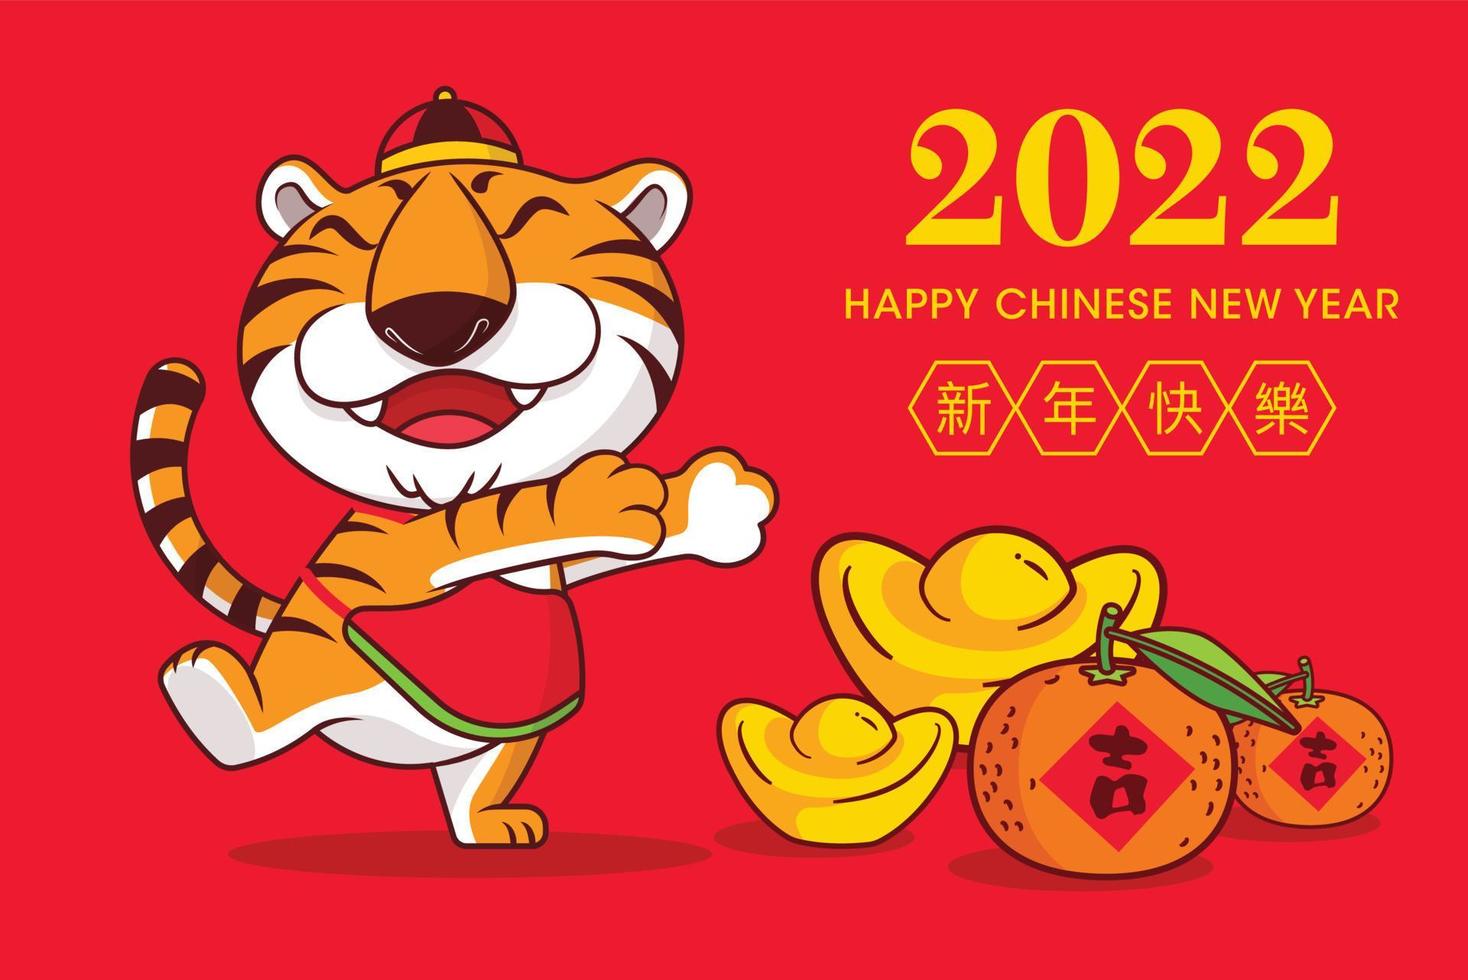 2022 gratulationskort för gott kinesiskt nytt år med tecknad söt tigerguldgöt och mandarin på golvet med 2022 kinesiska nyårsönskningar vektor